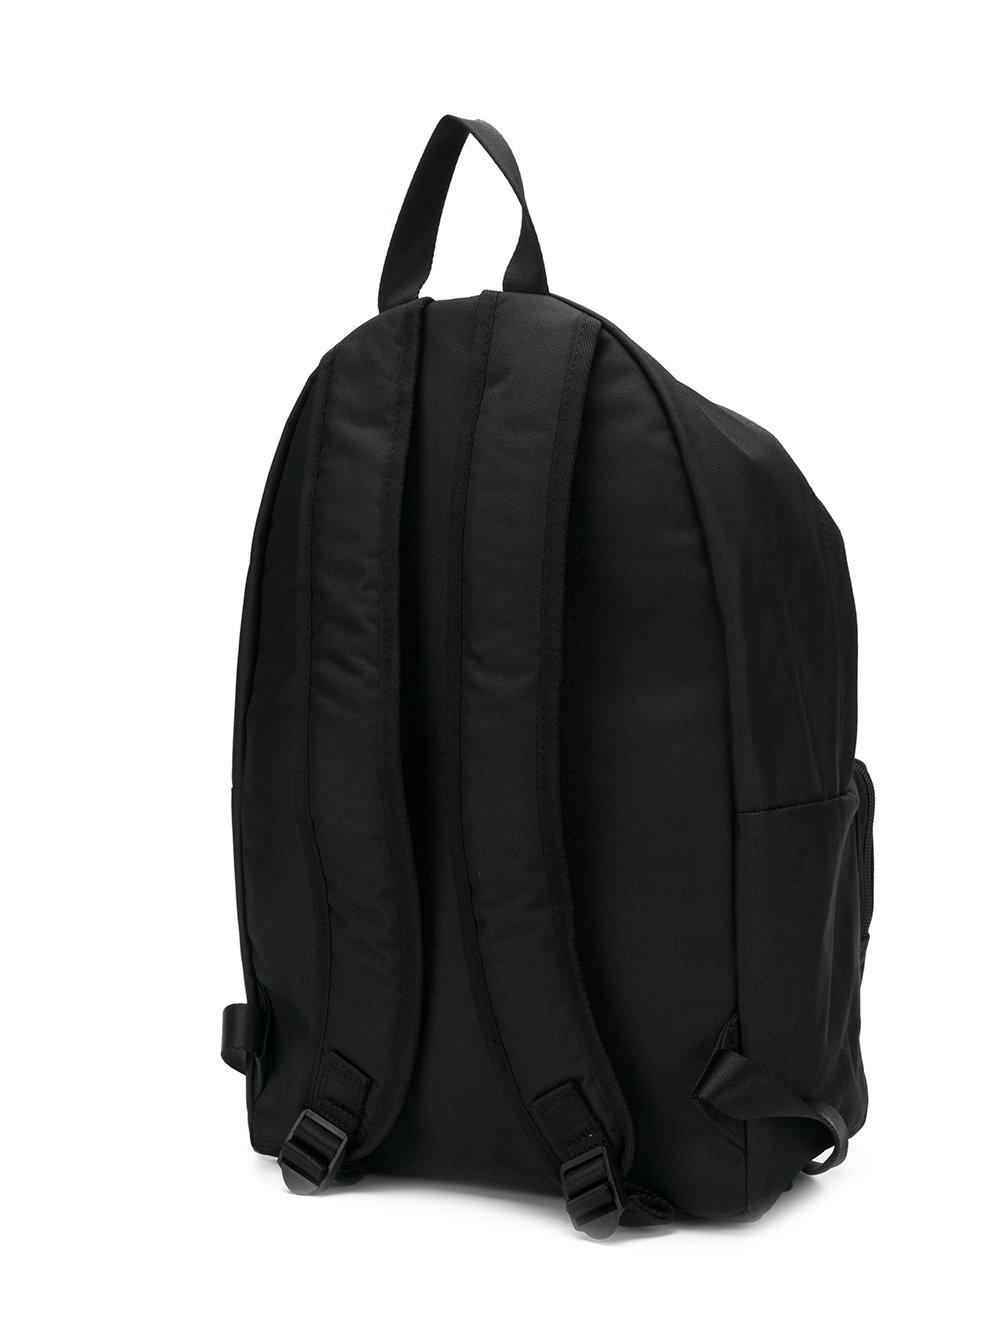 Calvin Klein Denim Logo Backpack in Black for Men - Lyst